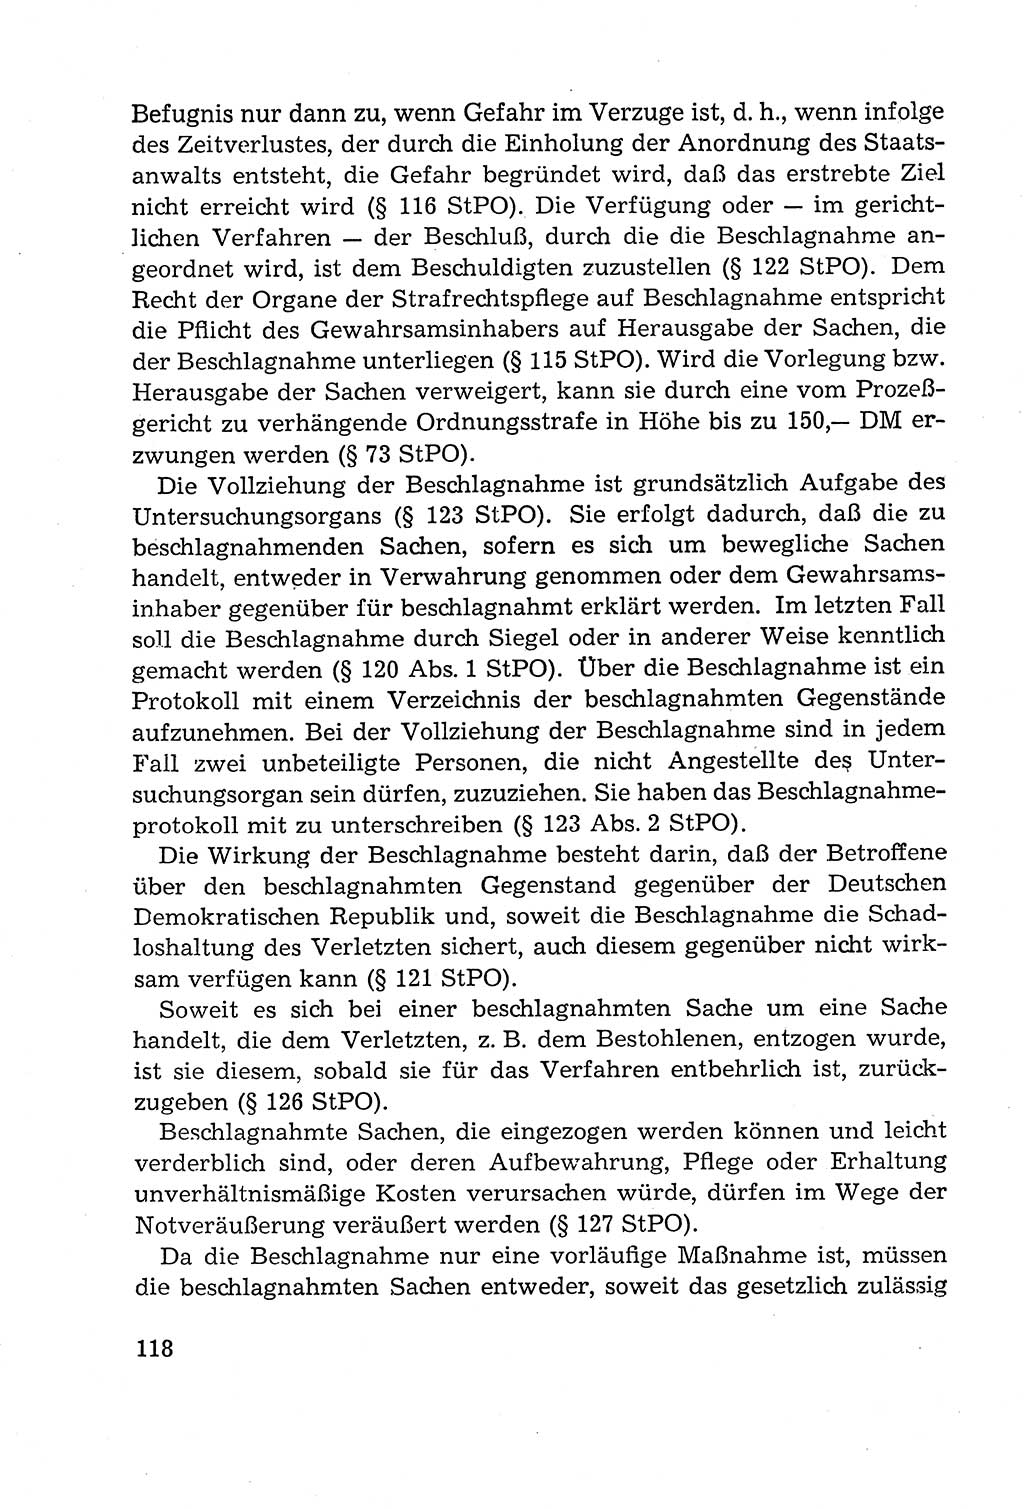 Leitfaden des Strafprozeßrechts der Deutschen Demokratischen Republik (DDR) 1959, Seite 118 (LF StPR DDR 1959, S. 118)